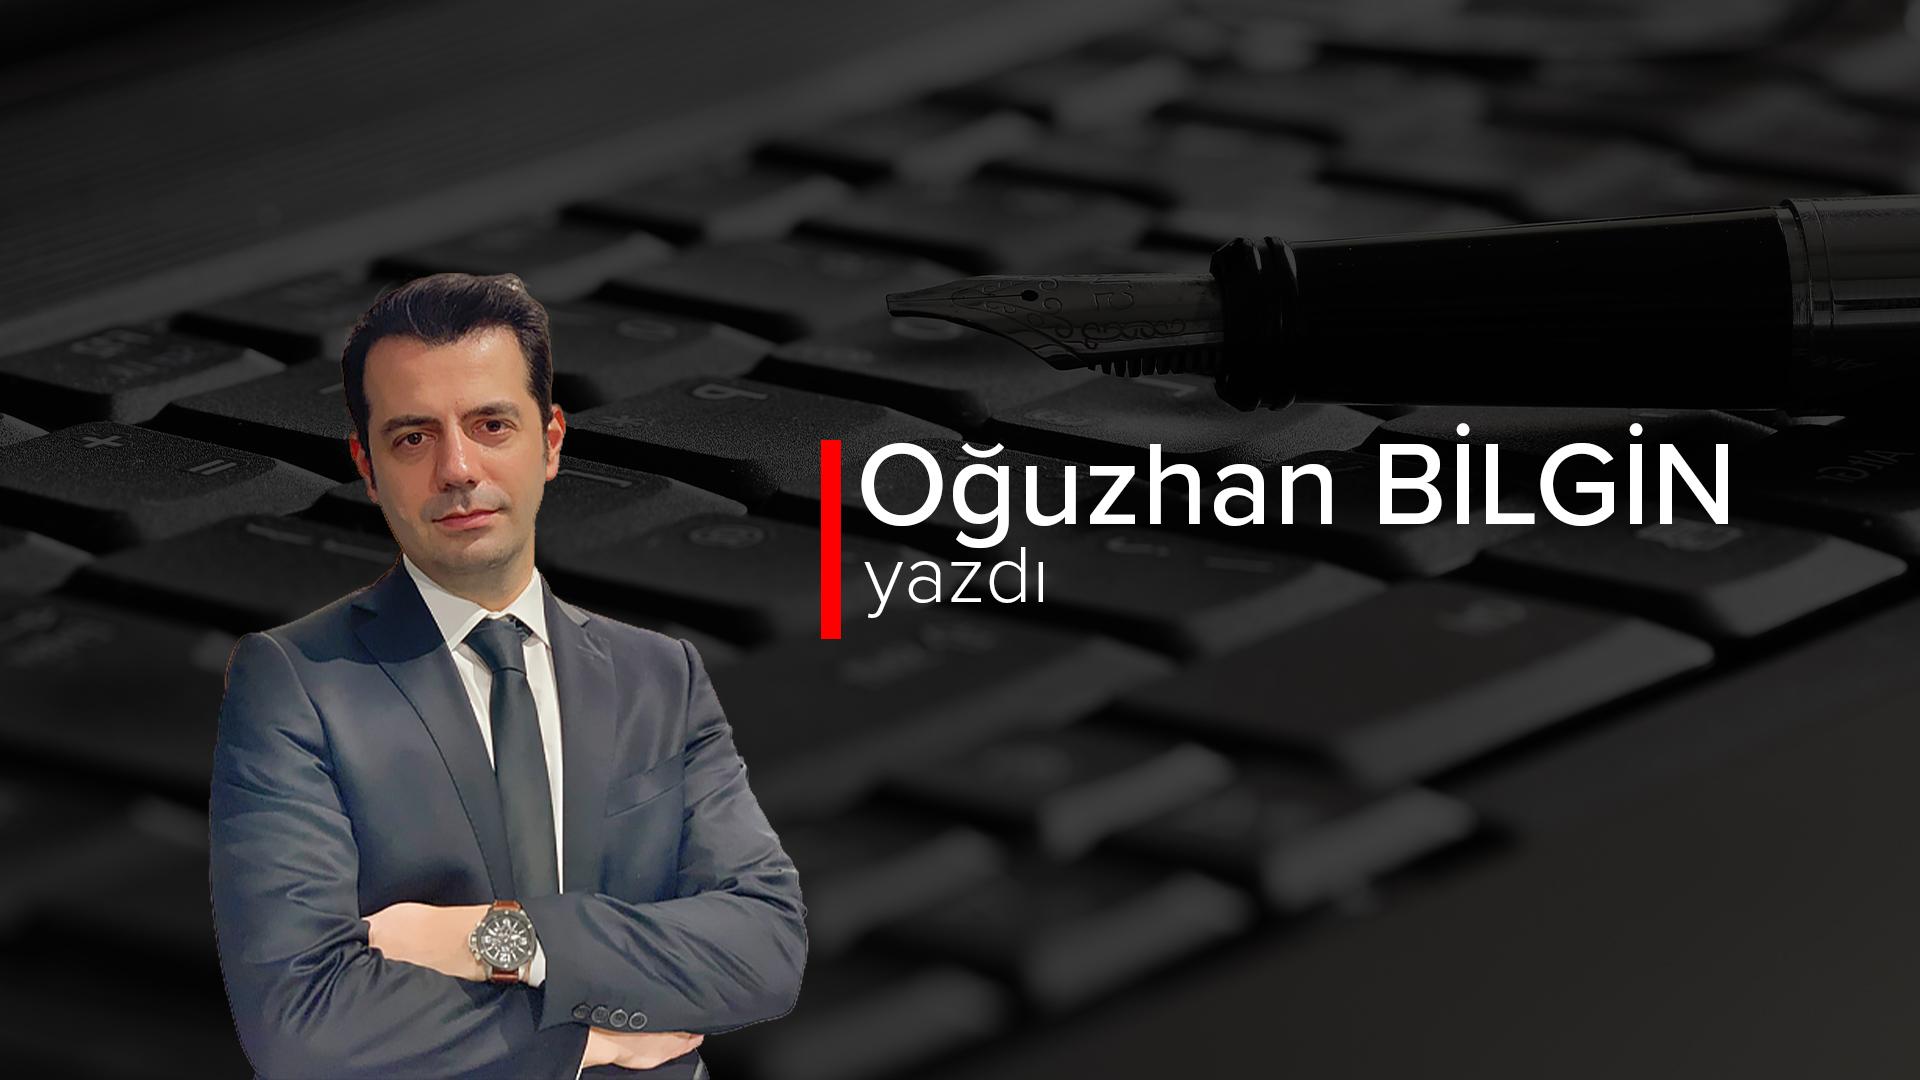 Εκκαθάριση των Κεμαλιστών του CHP και του Μουχαρέμ – Ουζάν Μπιλγκίν